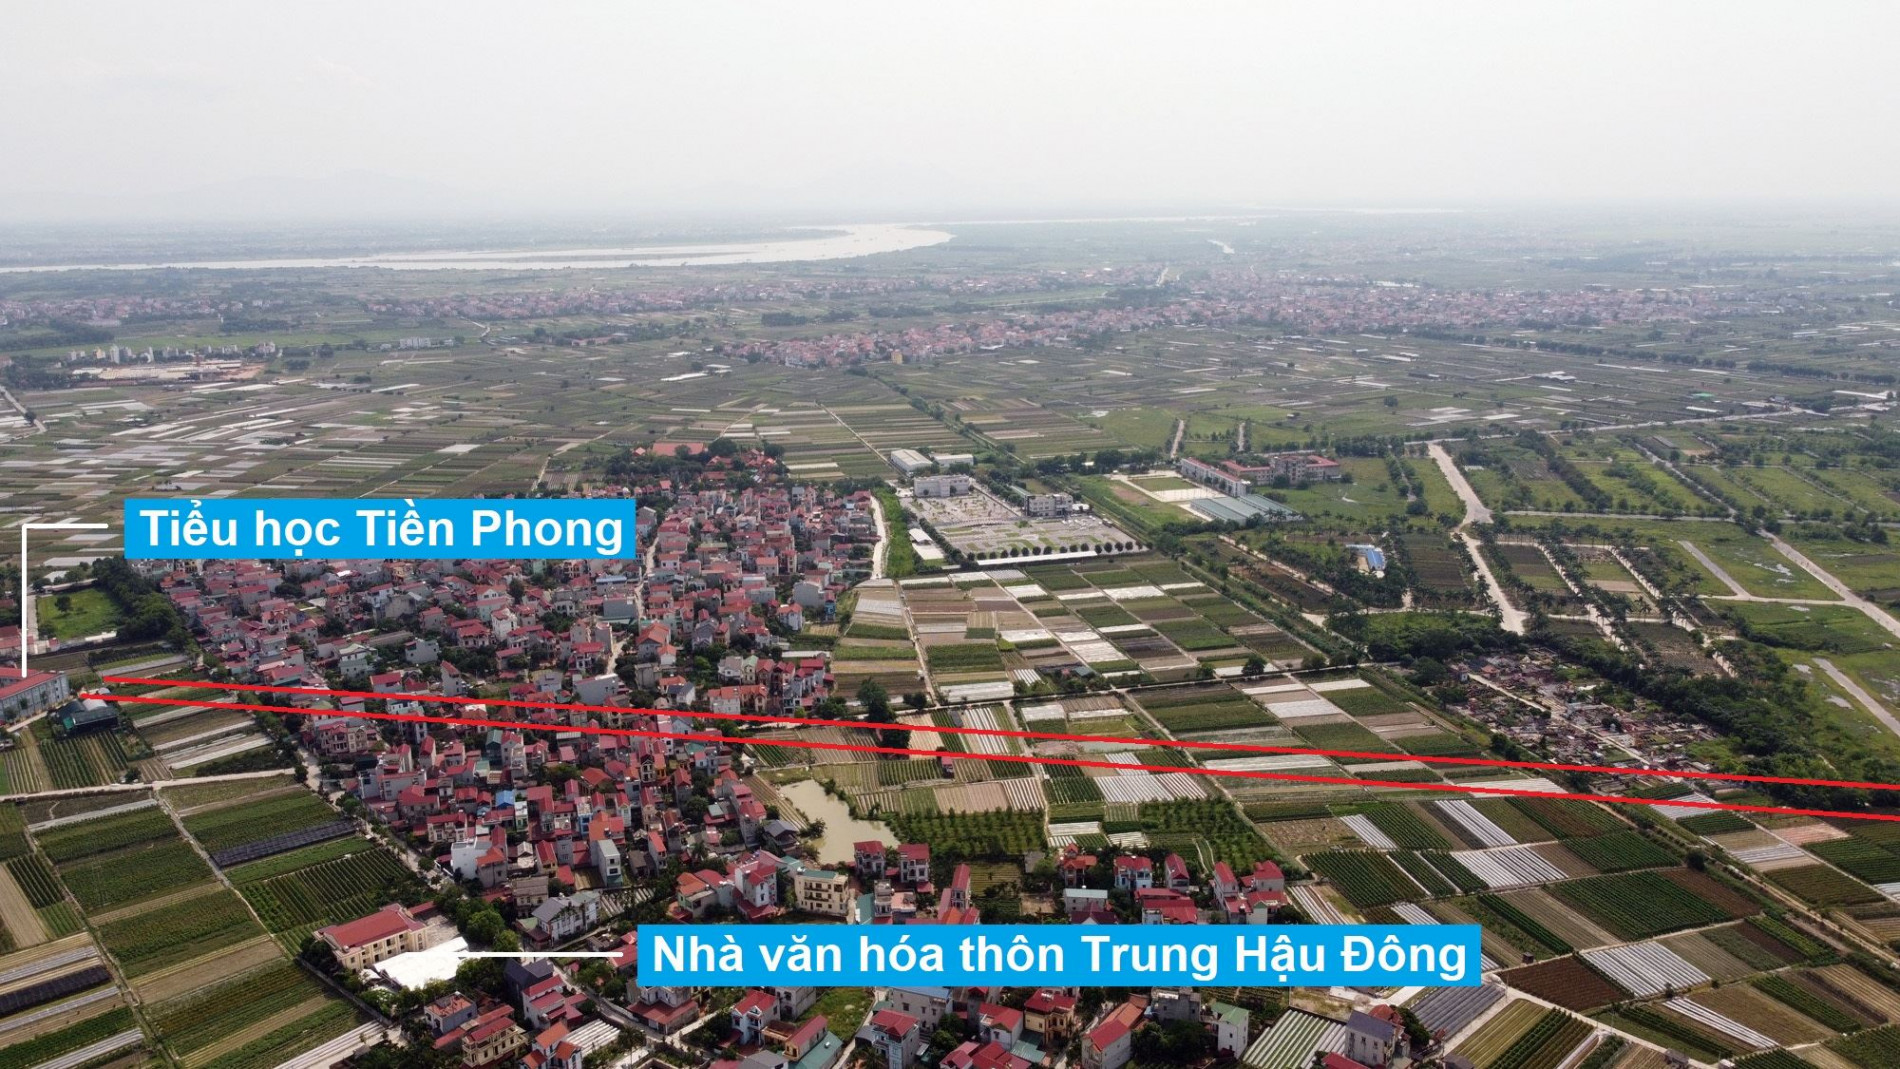 Đường sẽ mở theo quy hoạch ở xã Tiền Phong, Mê Linh, Hà Nội (phần 2)